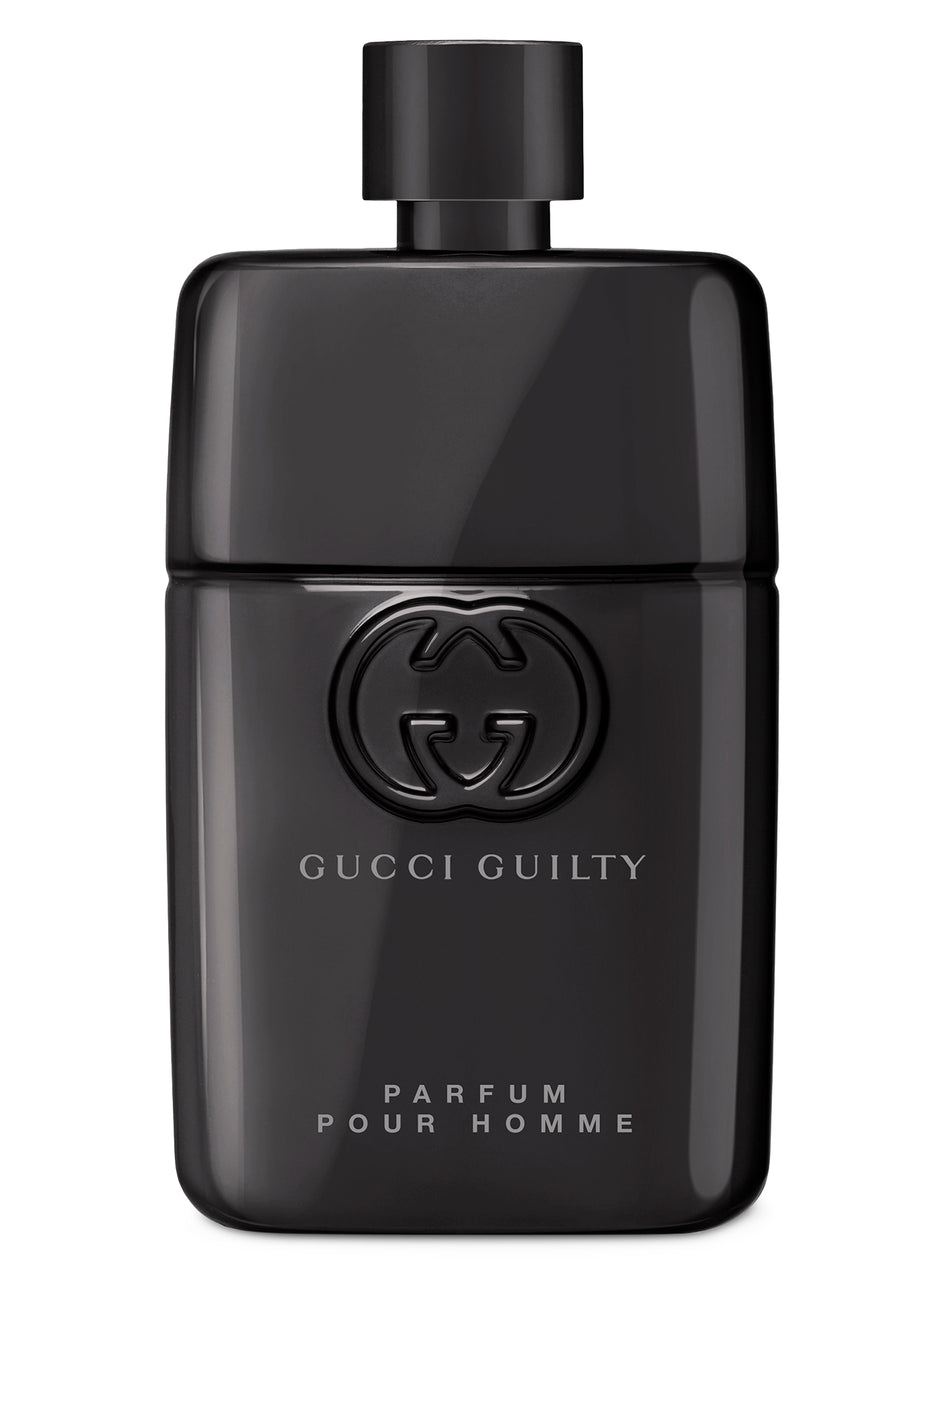 Gucci Guilty Pour Homme Perfum For Men